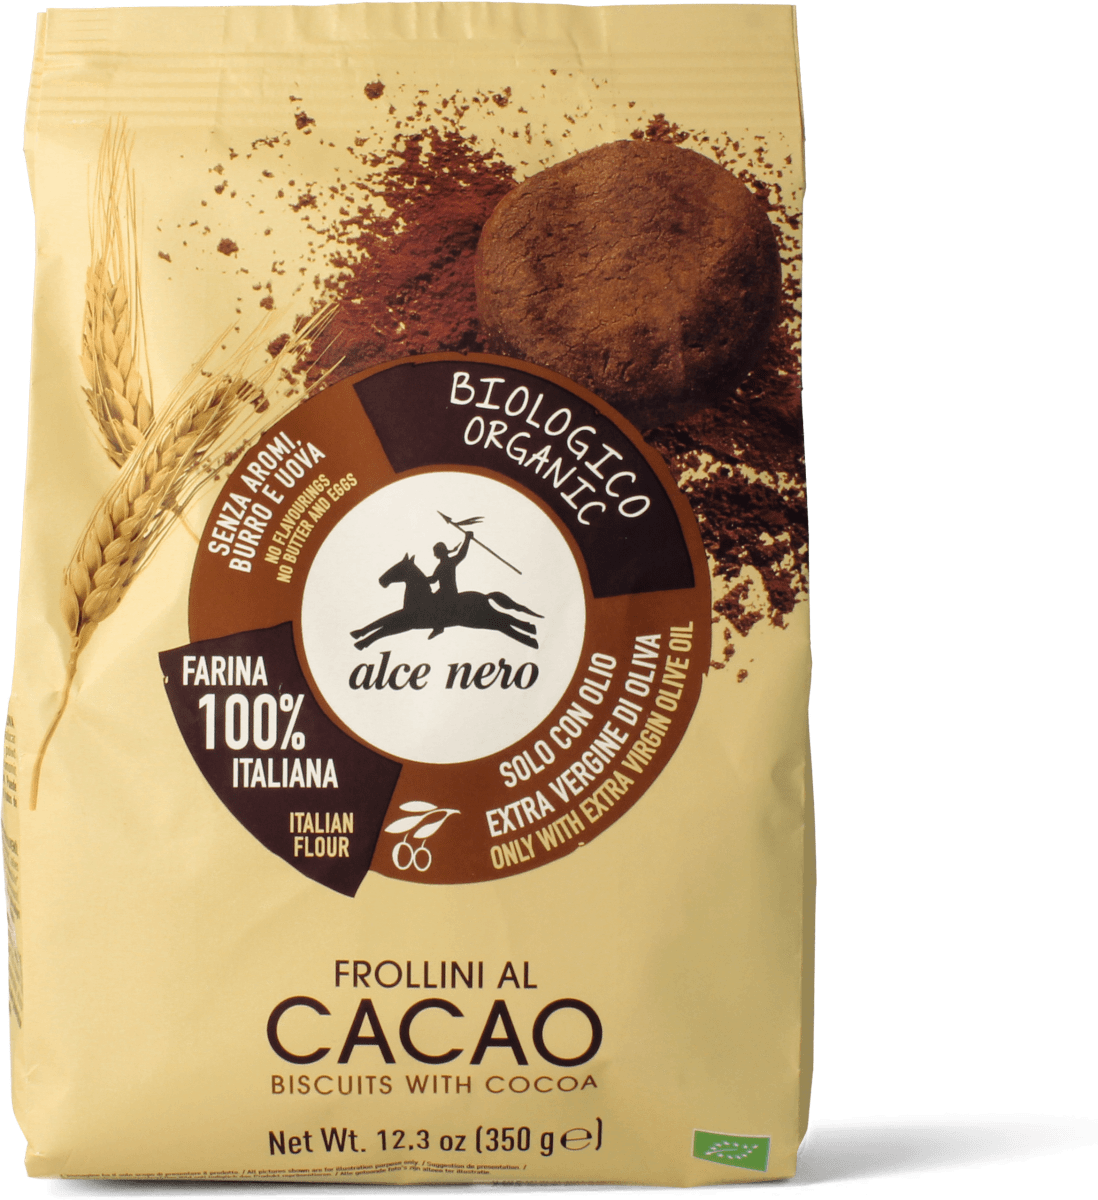 alce nero Frollini al cacao, 350 g Acquisti online sempre convenienti